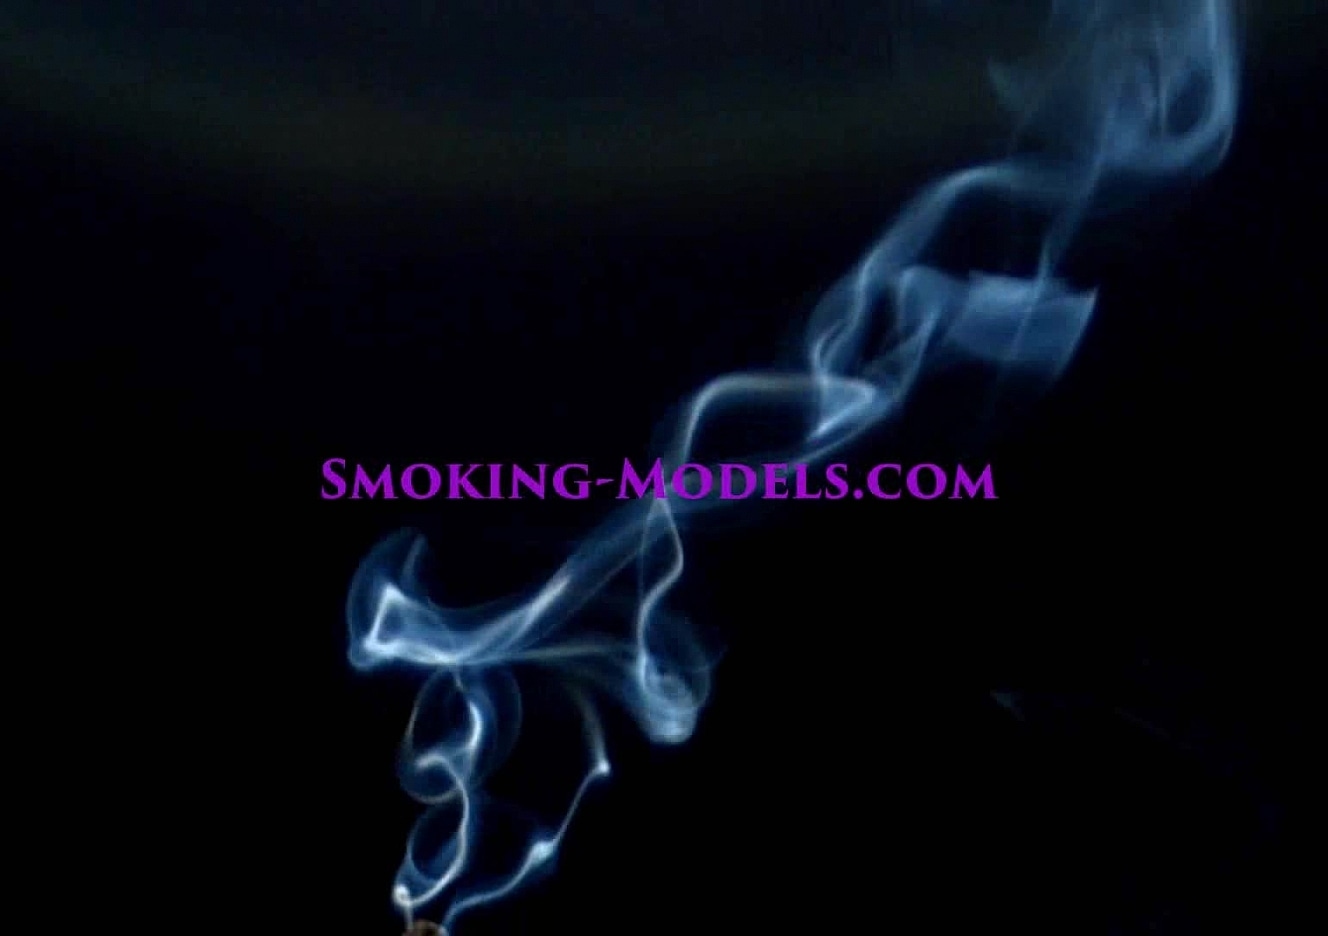 content/SMOKINGM-V-2730/0.jpg